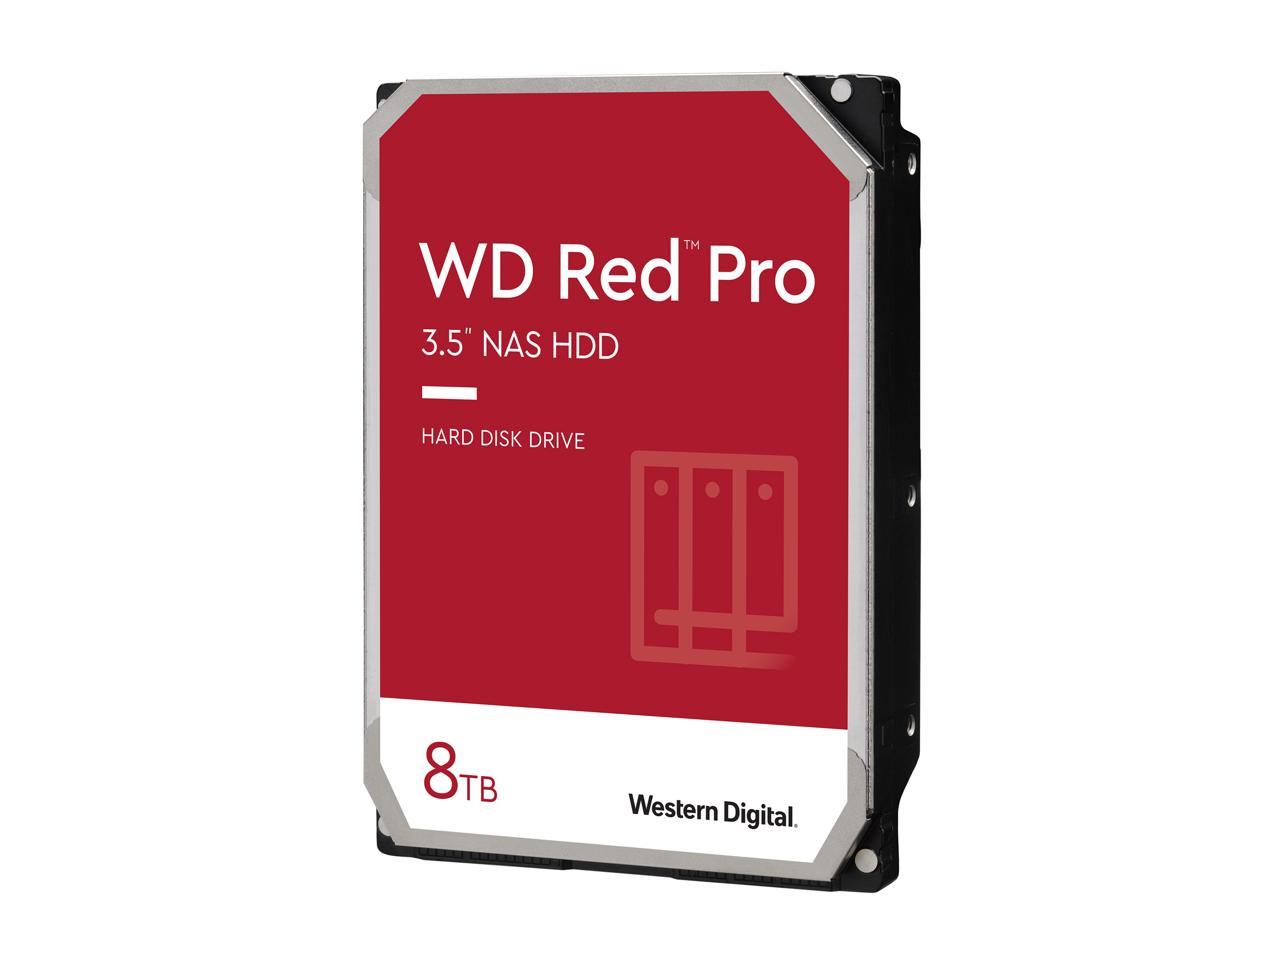 Western Digital WD Red Pro WD8003FFBX 8TB 7200 RPM 256MB Cache SATA 6.0Gb/s 3.5" Internal Hard Drive Bare Drive